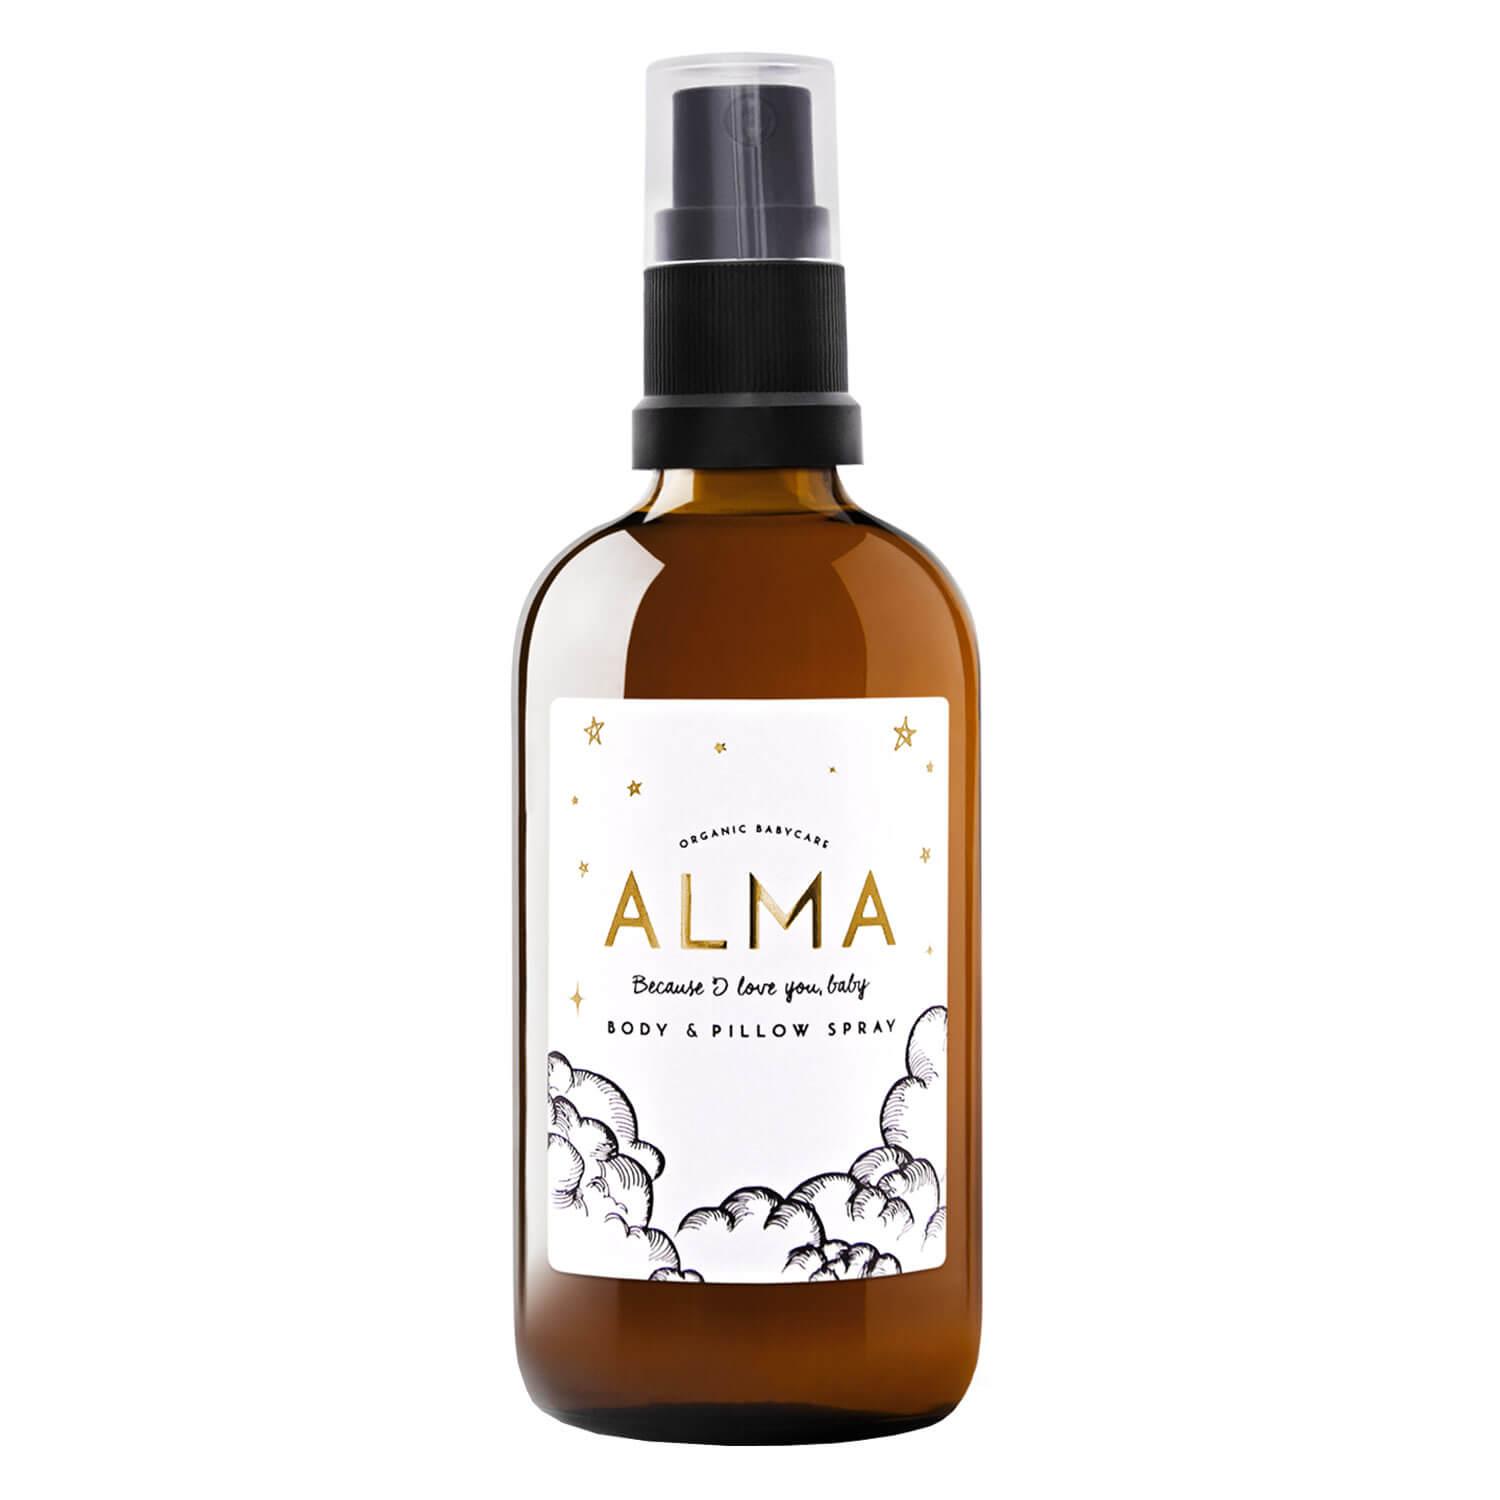 ALMA - Body & Pillow Spray